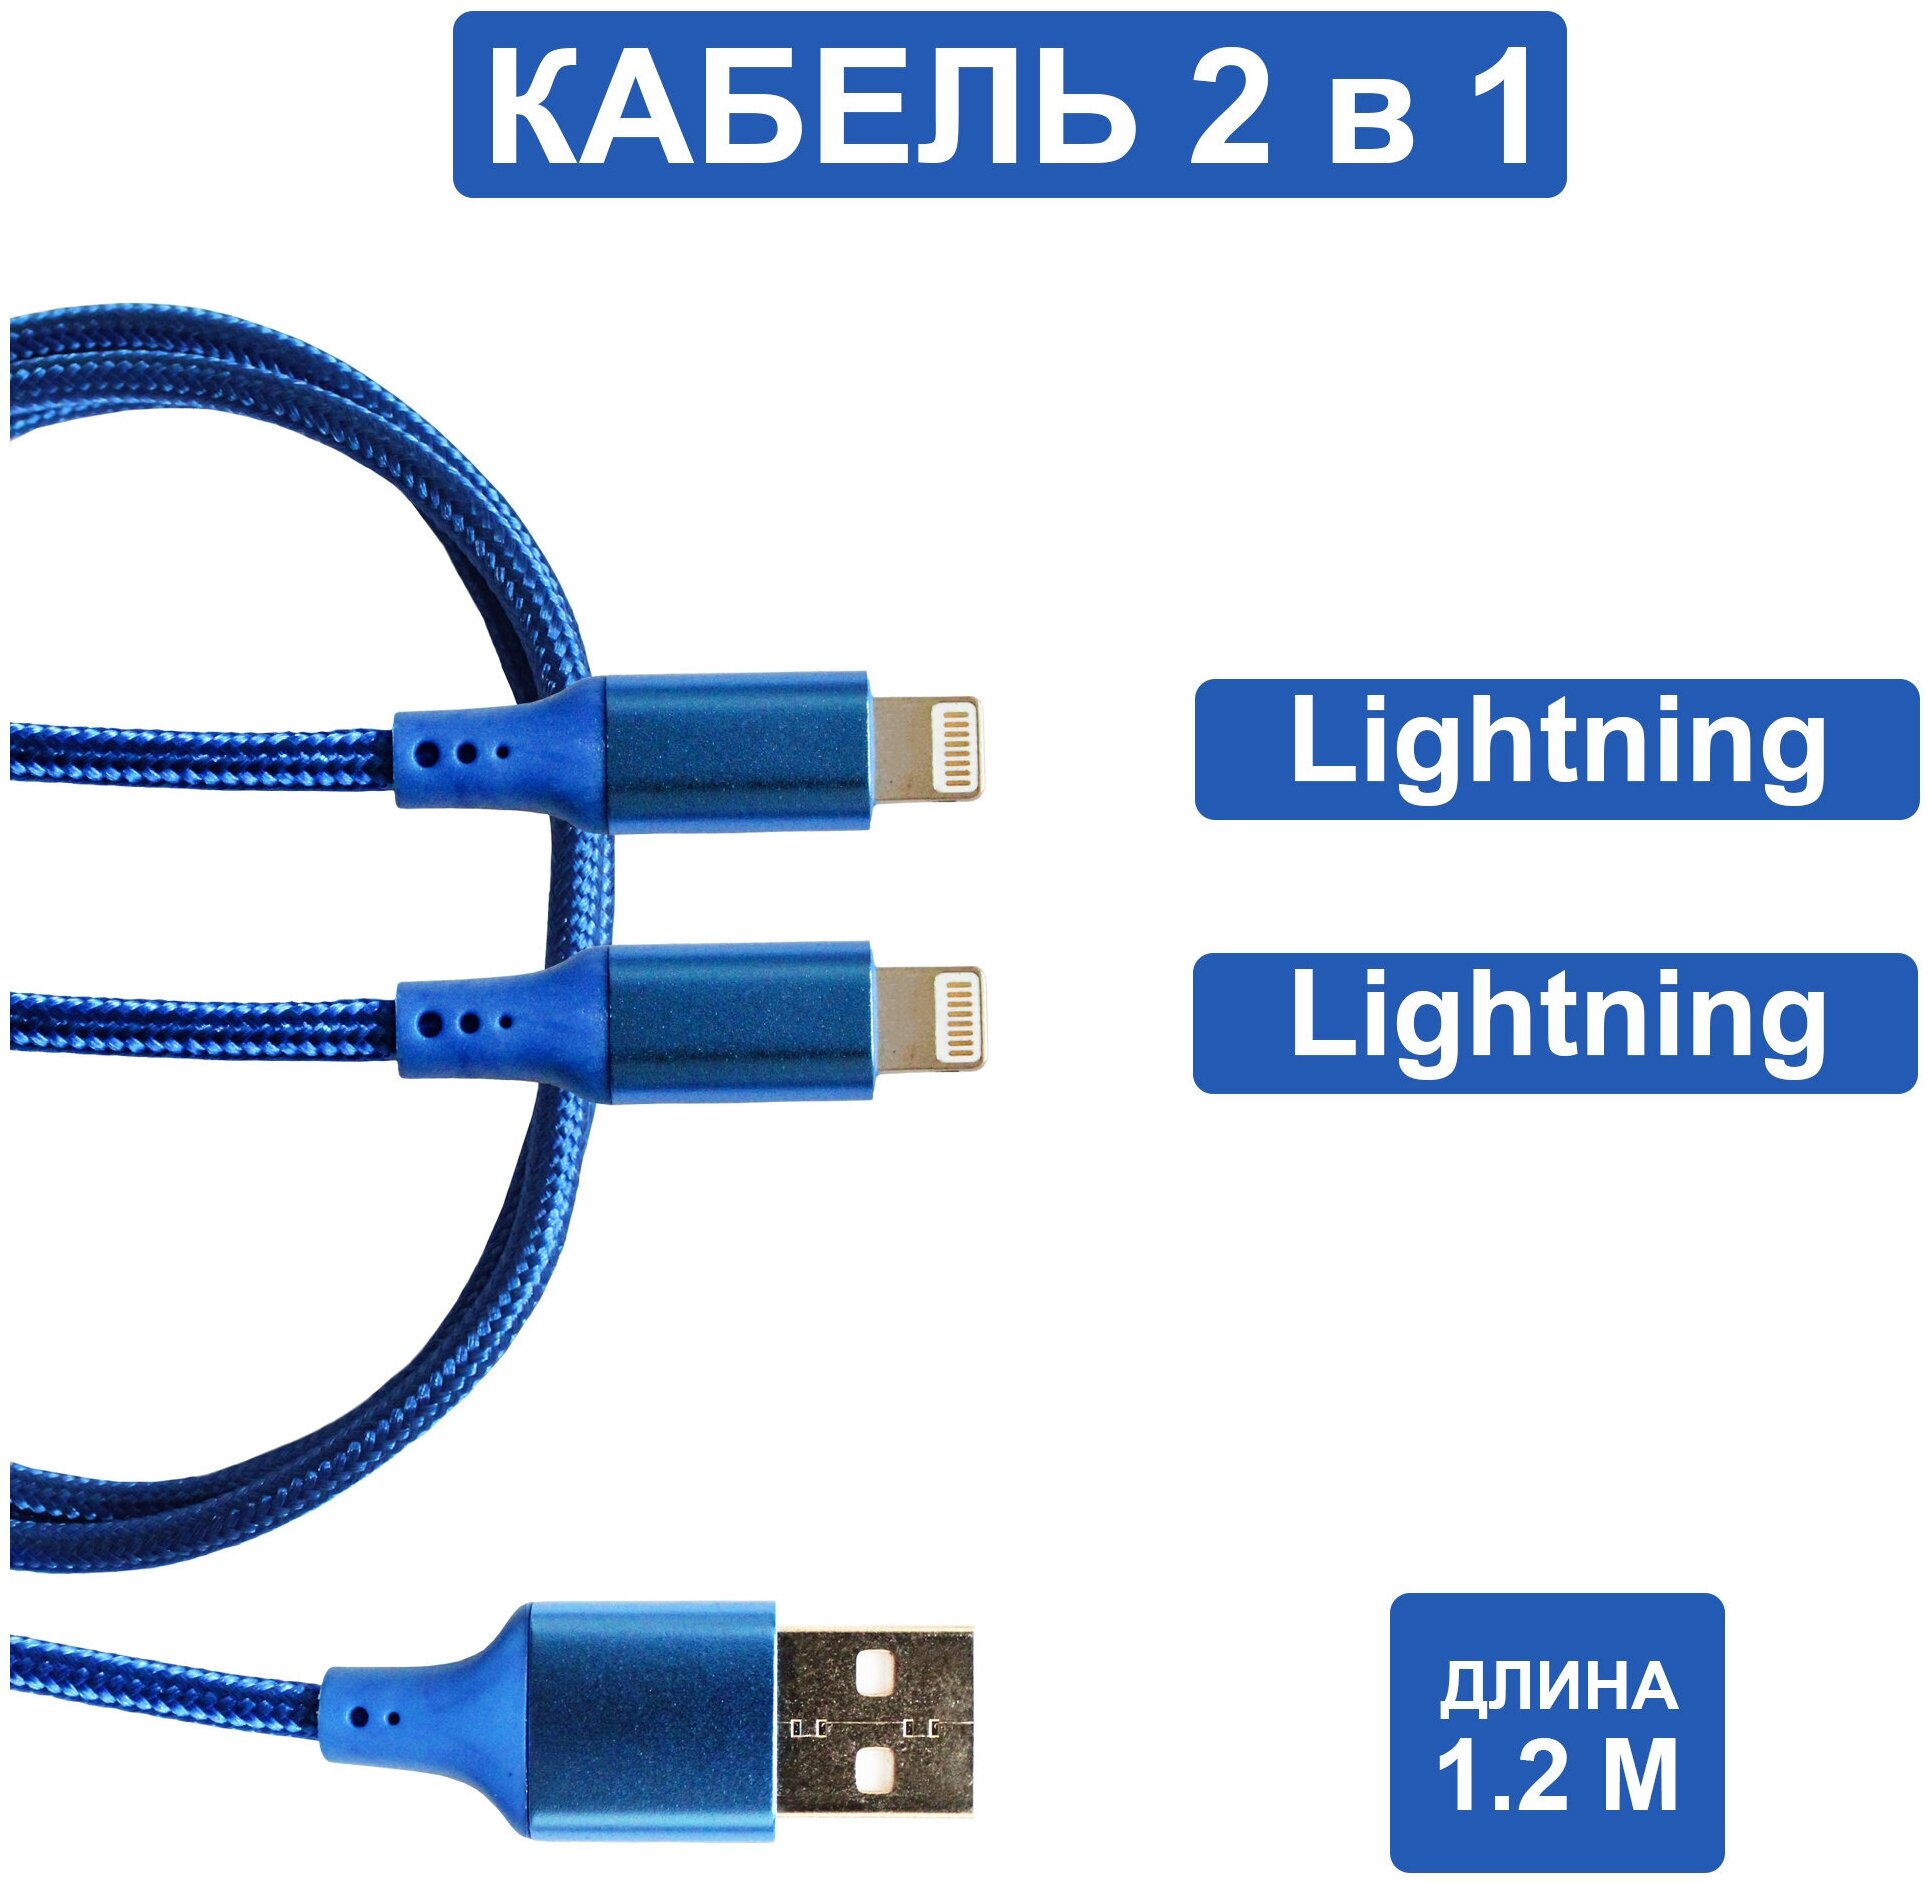 Usb кабель для зарядки 2 в 1 (Lightning, Lightning), usb провод 1.2м, Зарядка для iPhone, кабель usb, Кабель 2 в одном Jamme, Шнур юсб